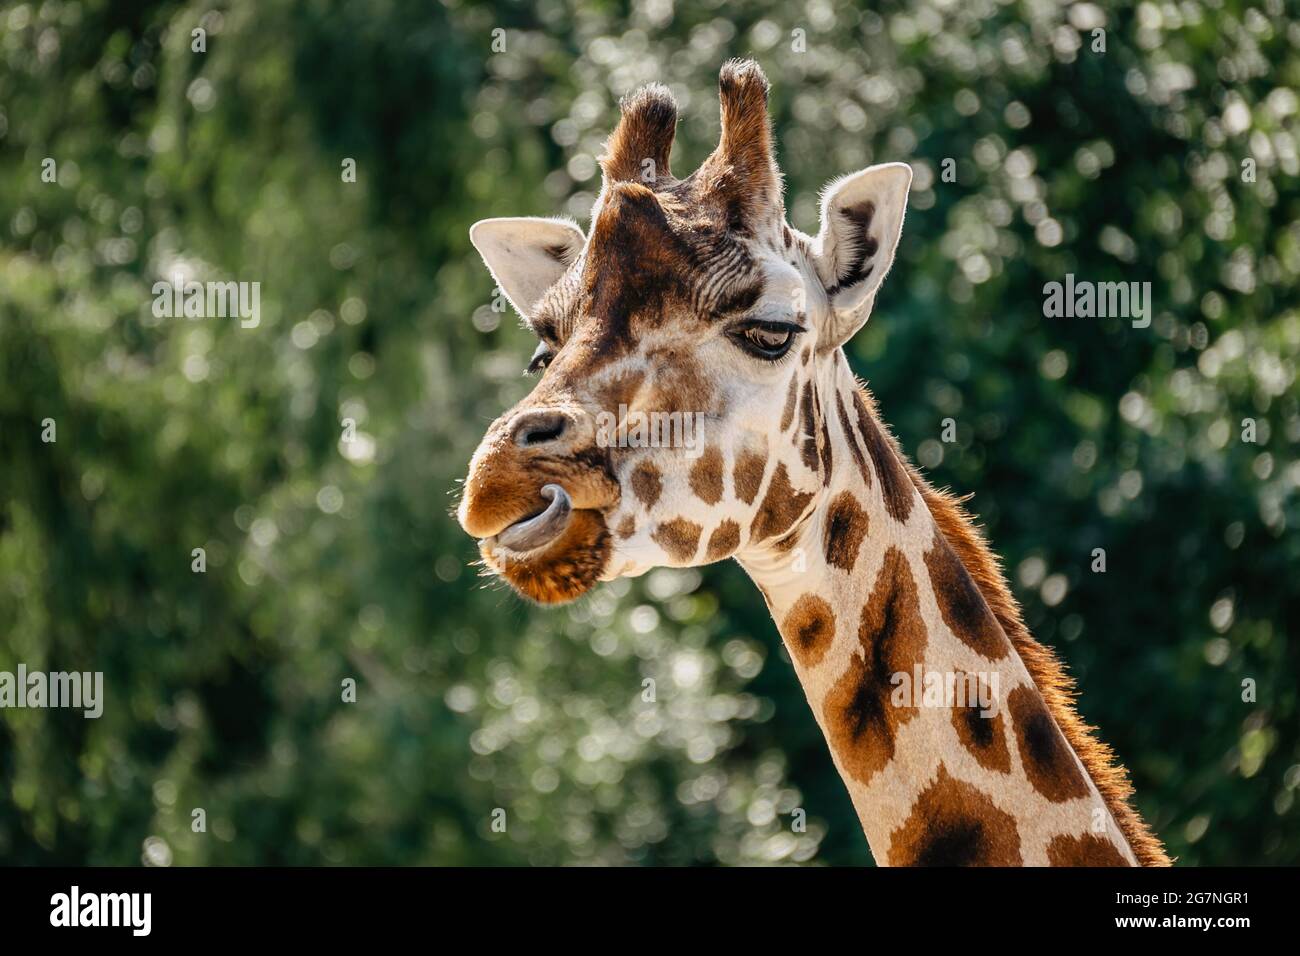 Girafe Rothschild au ZOO.Giraffe devant des arbres verts qui donnent sur l'appareil photo. Visage girafe amusant. Vue avant de la girafe sur un feuillage vert flou Banque D'Images